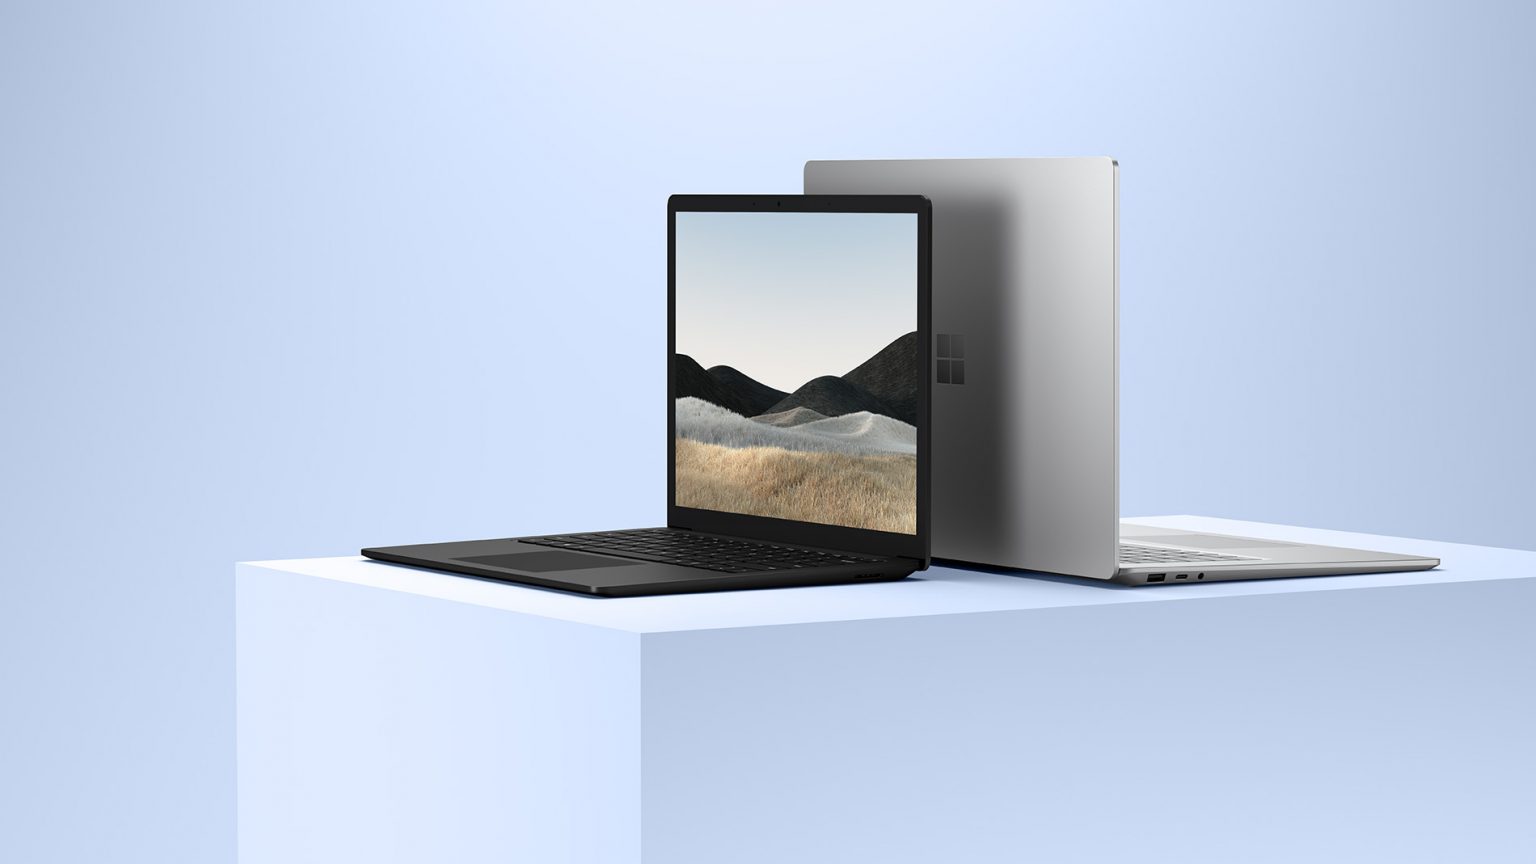 Surface Laptop 4 13.5インチ　ノートPC